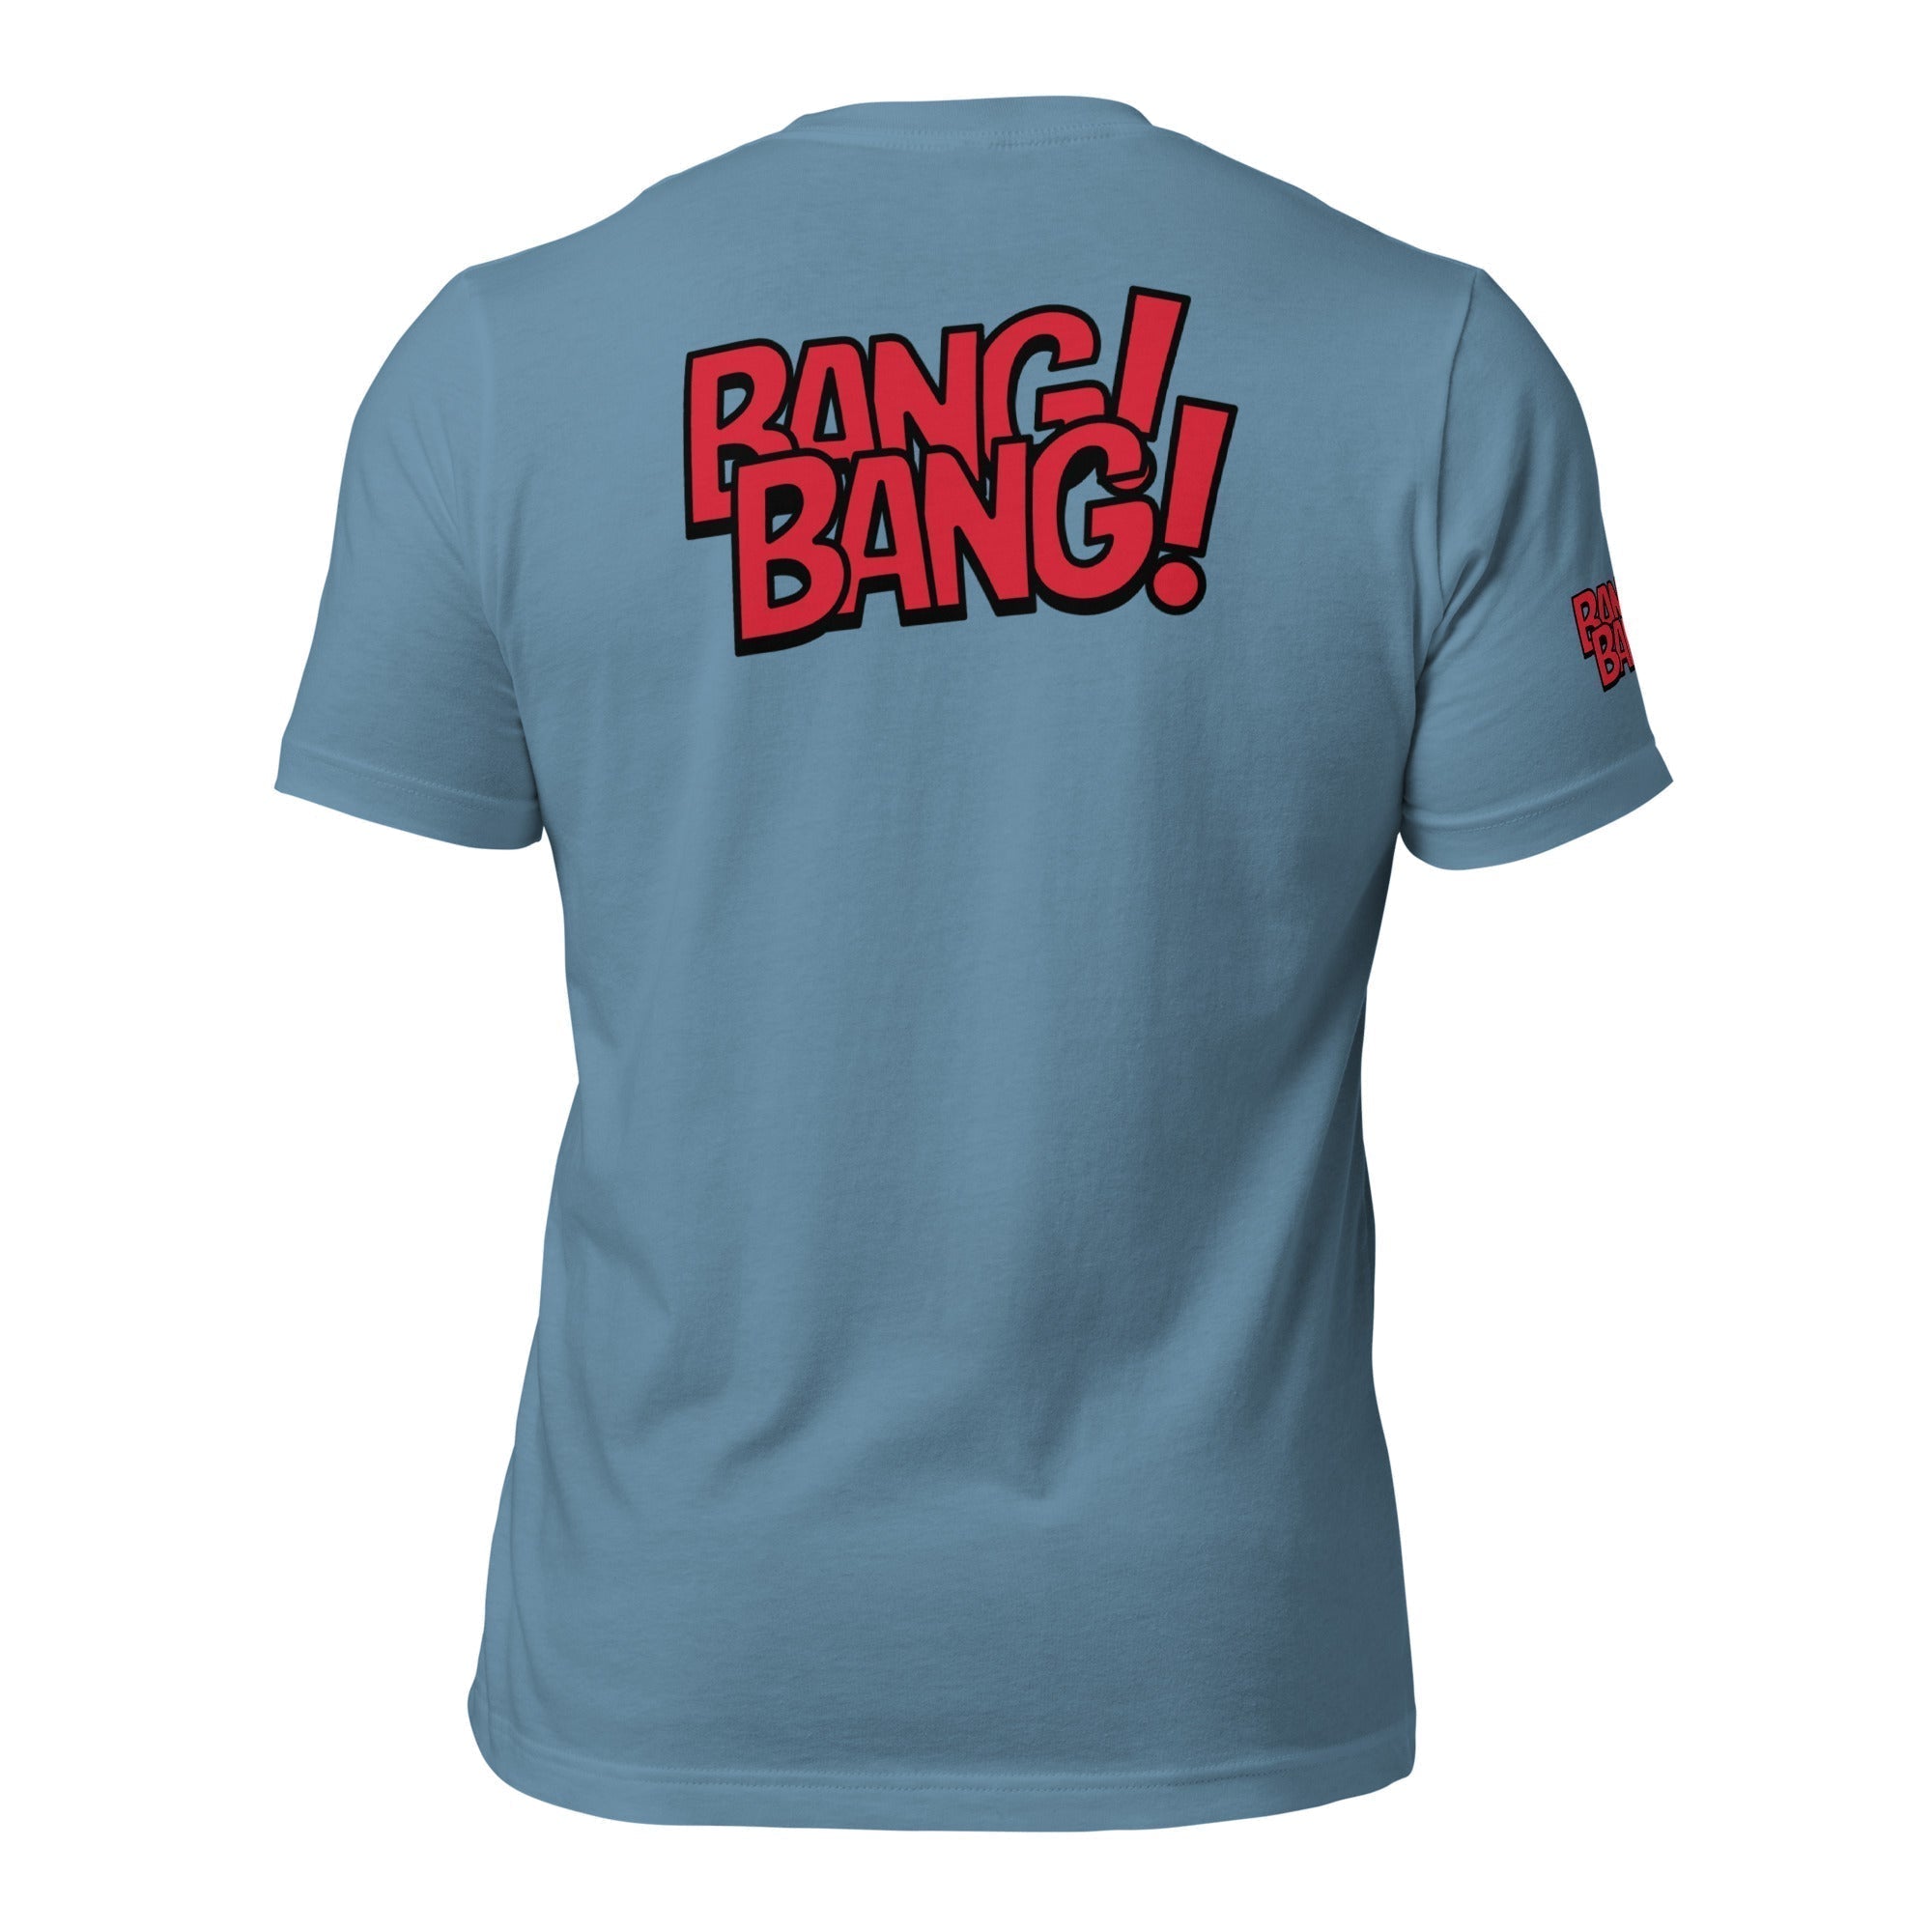 Unisex Crew Neck T-Shirt - Pulp Fiction Bang! Bang! - GRAPHIC T-SHIRTS